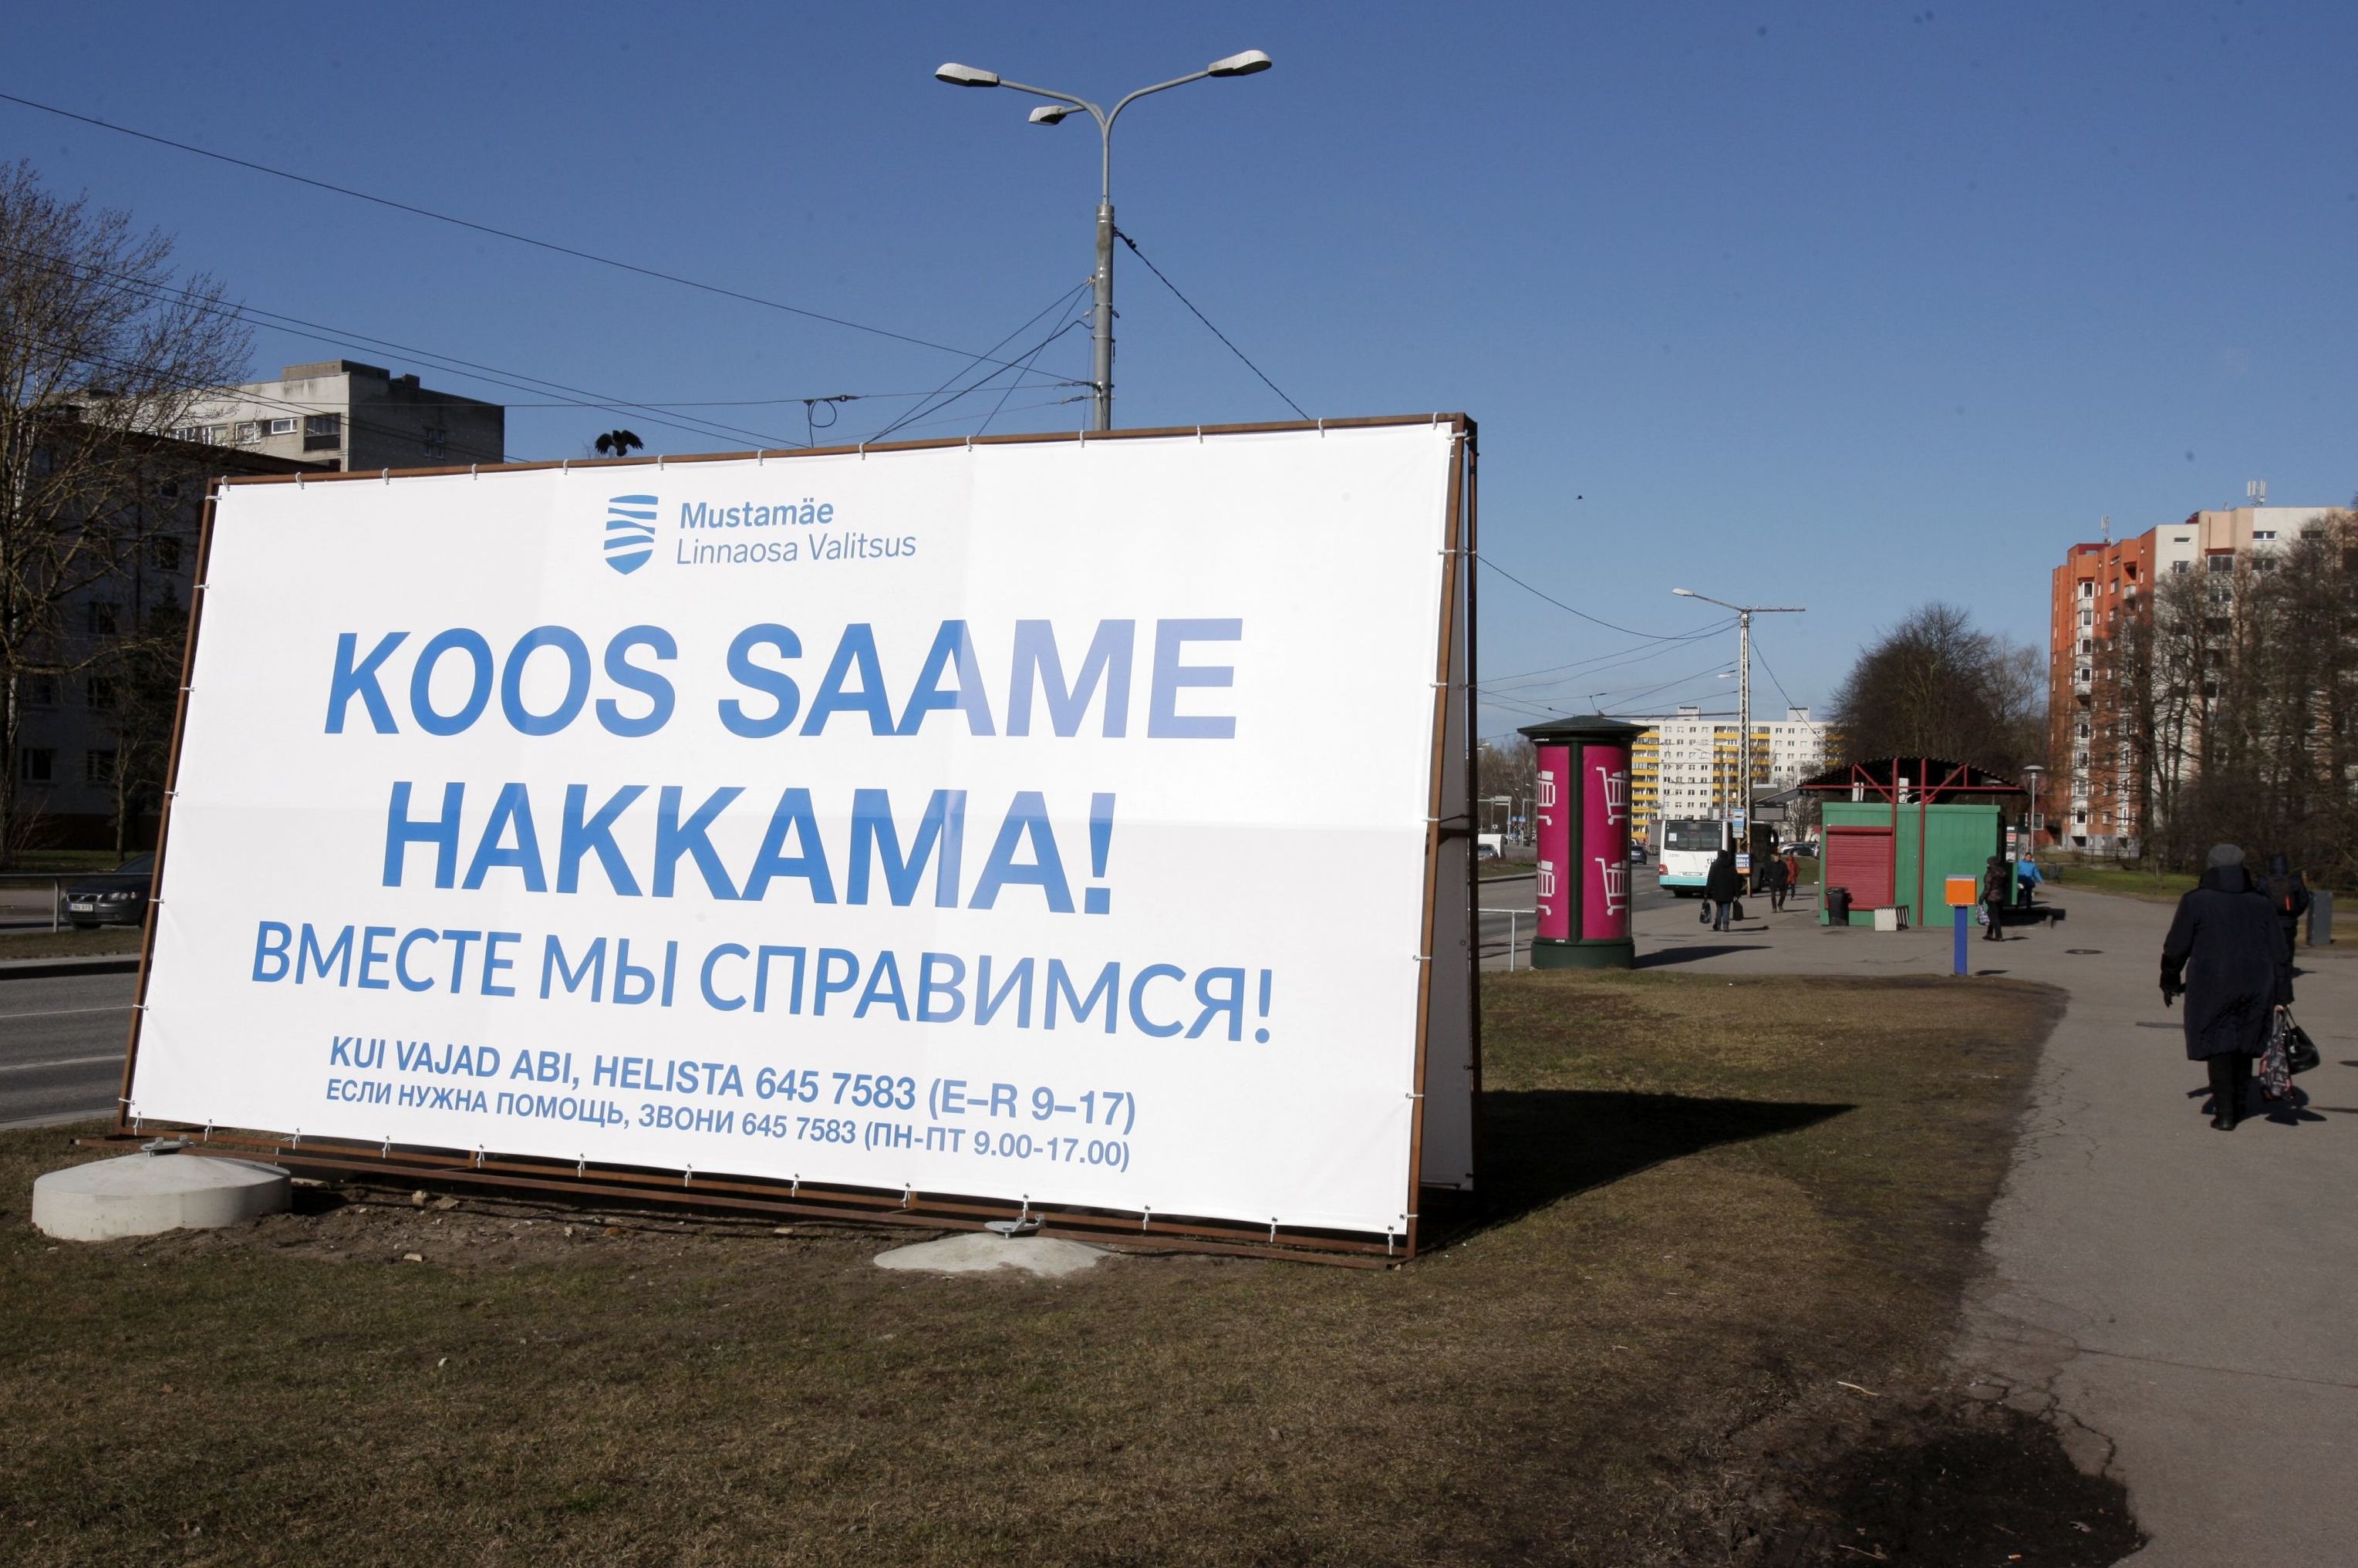 Ситуация в Эстонии в связи с коронавирусом. Плакат "Вместе мы справимся!" на улице Таллина. 